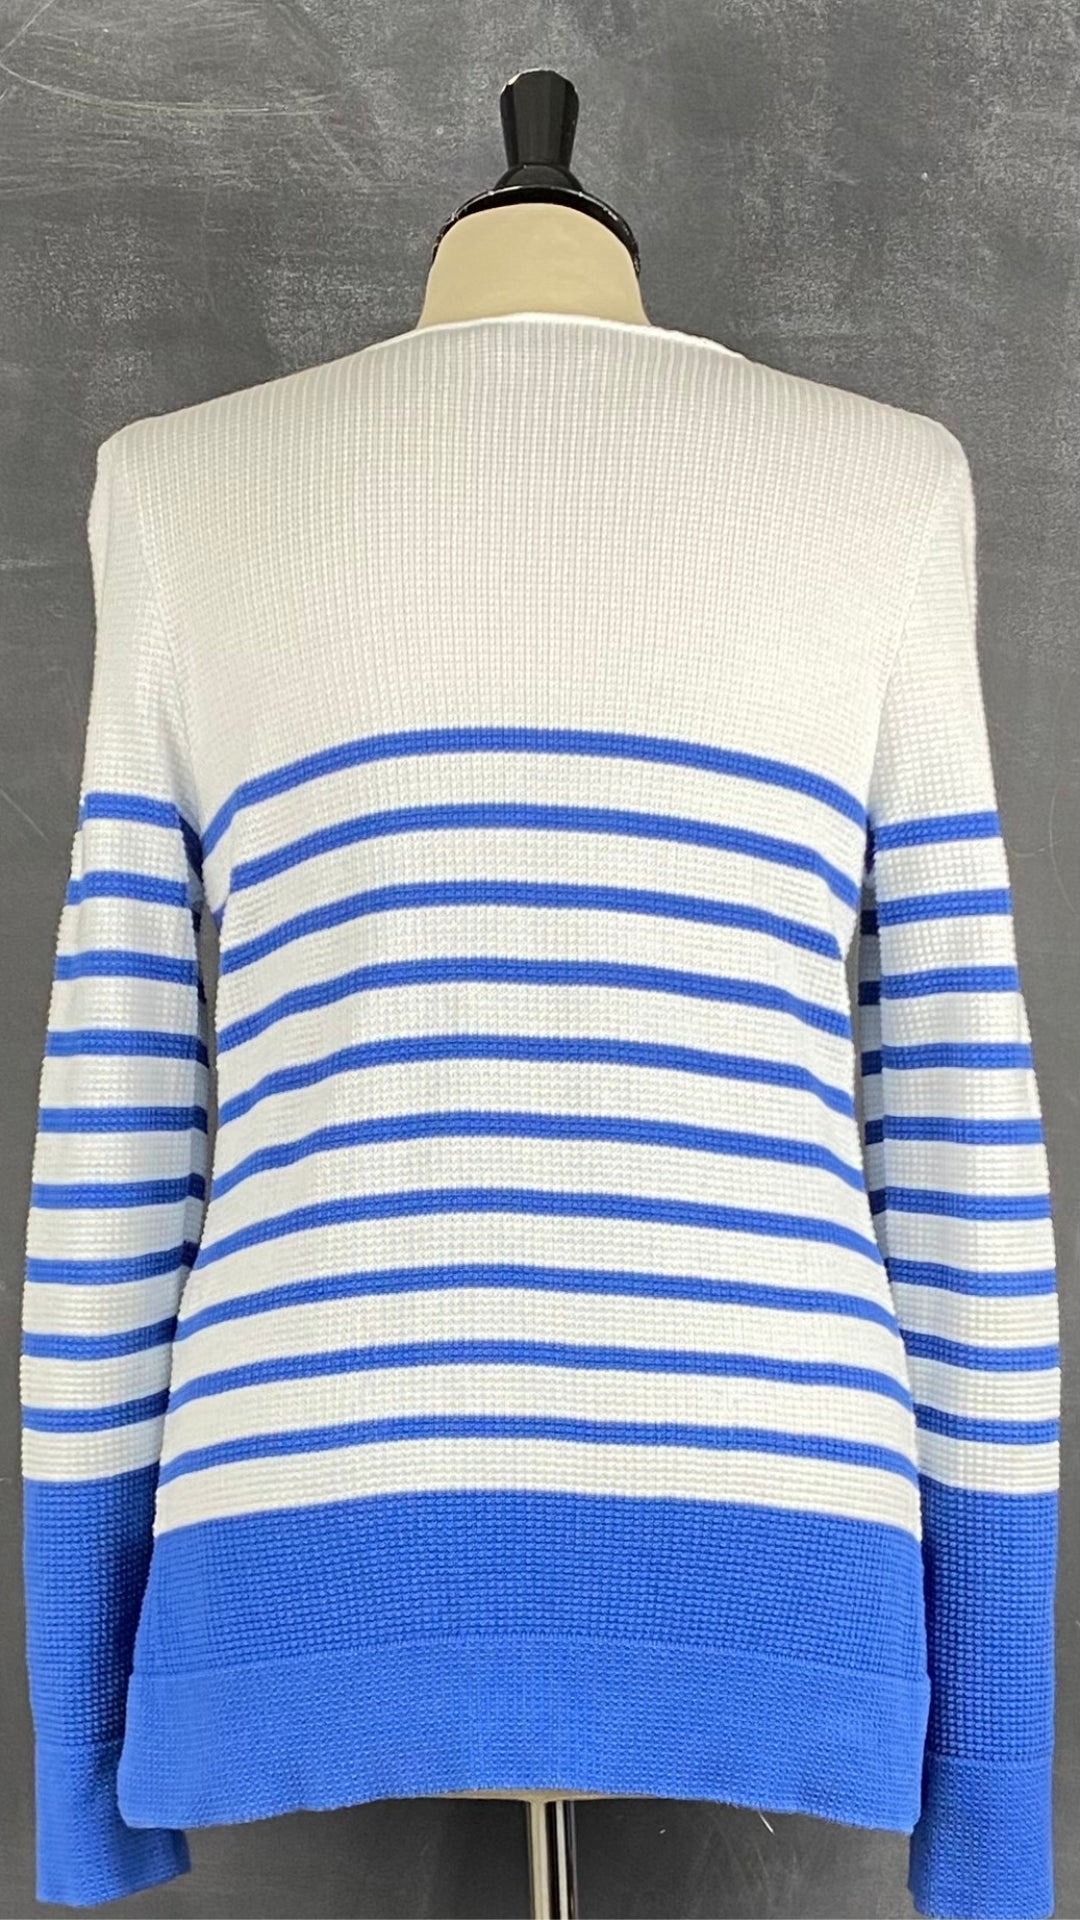 Chandail marinière en tricot de coton à rayures bleues Saint James, taille 6 (small). Vue de dos.